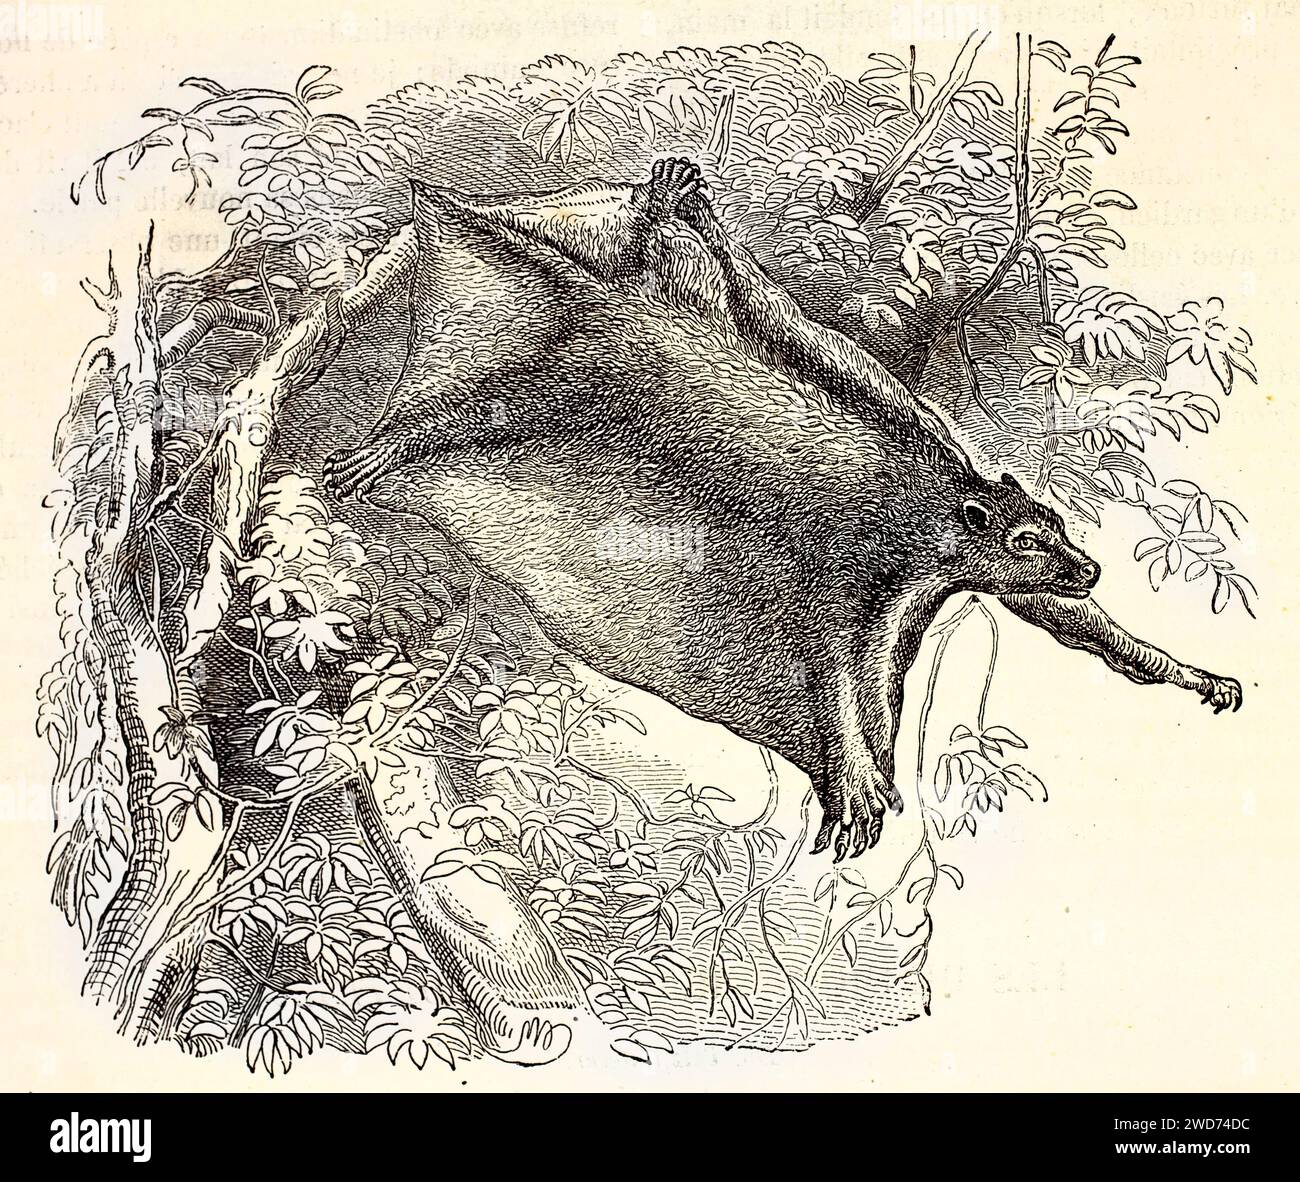 Vecchia illustrazione incisa di Sunda Flying Lemur. Di autore sconosciuto, pubblicato su Brehm, Les Mammifers, Baillière et fils, Parigi, 1878 Foto Stock